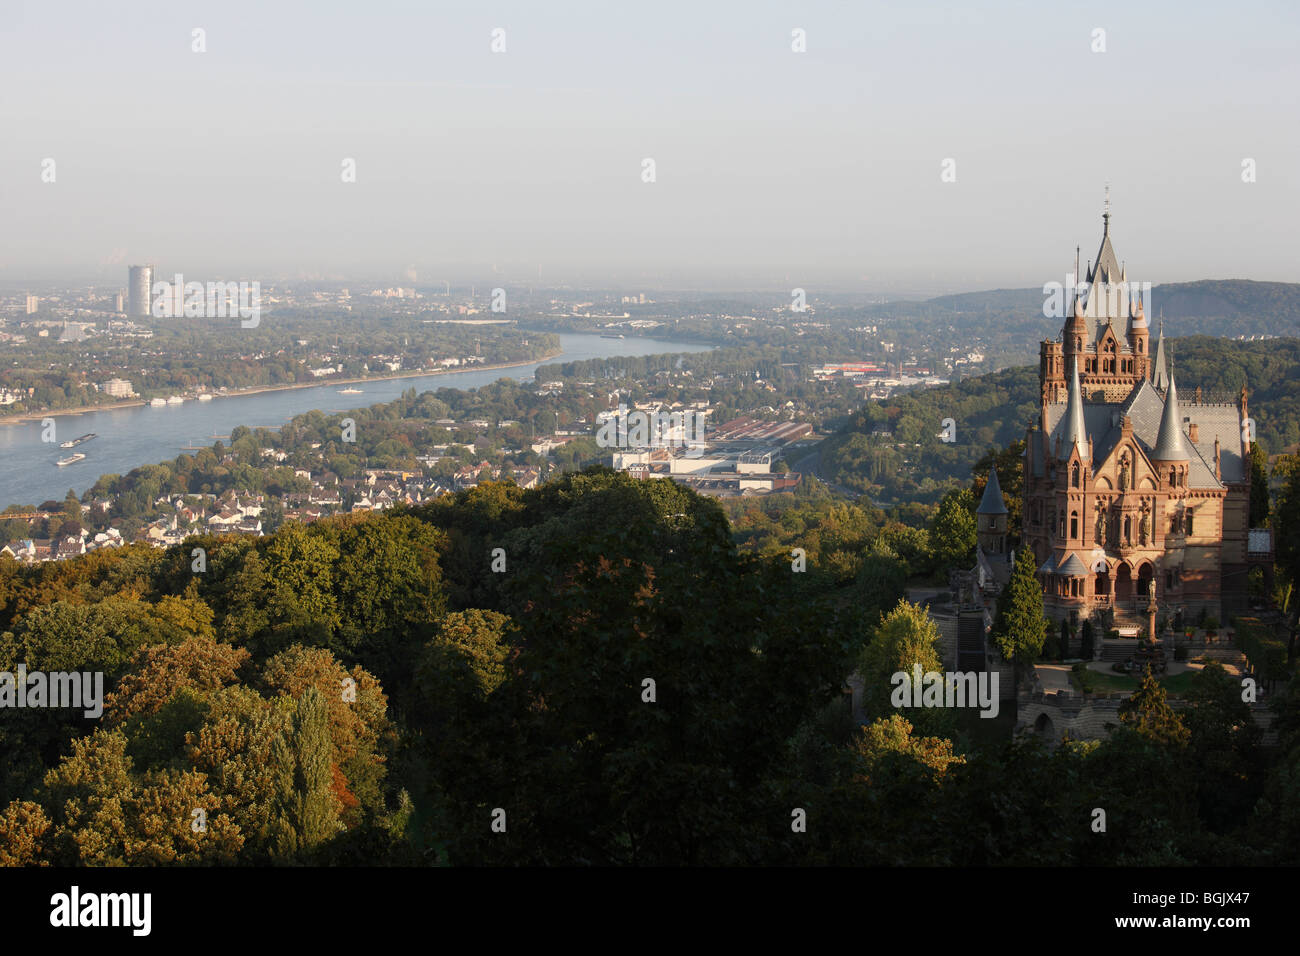 Königswinter, Schloß Drachenburg, Blick auf den Rhein nach Bonn Foto Stock